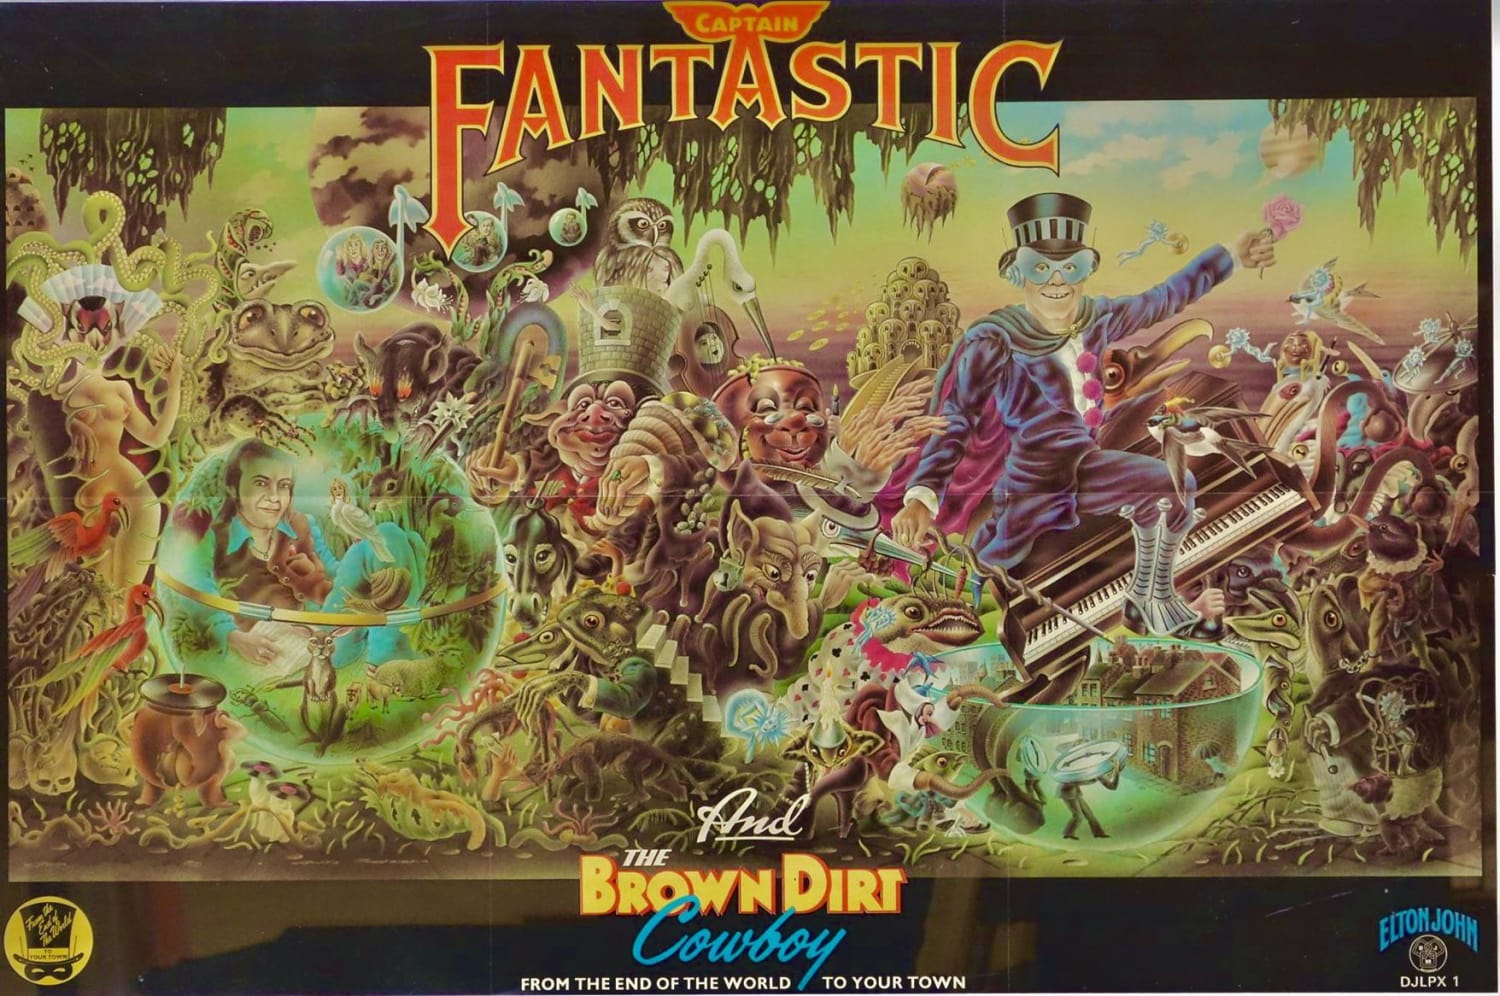 Elton John- “Captain Fantastic And The Brown Dirt Cowboy” (Full Artwork) (1975)